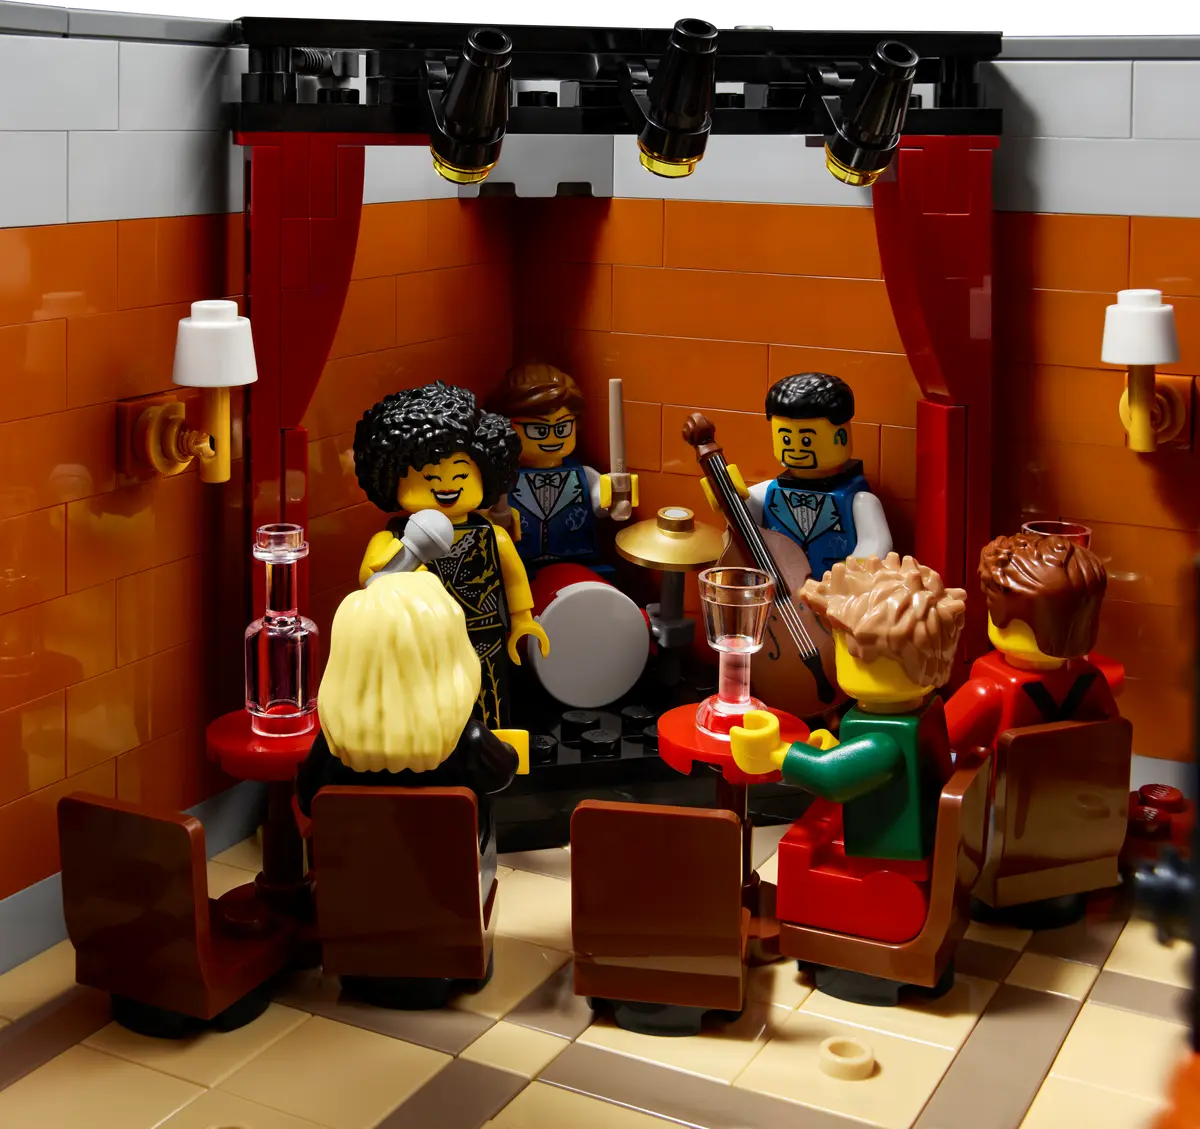 10312 LEGO ICONS - Jazz Club